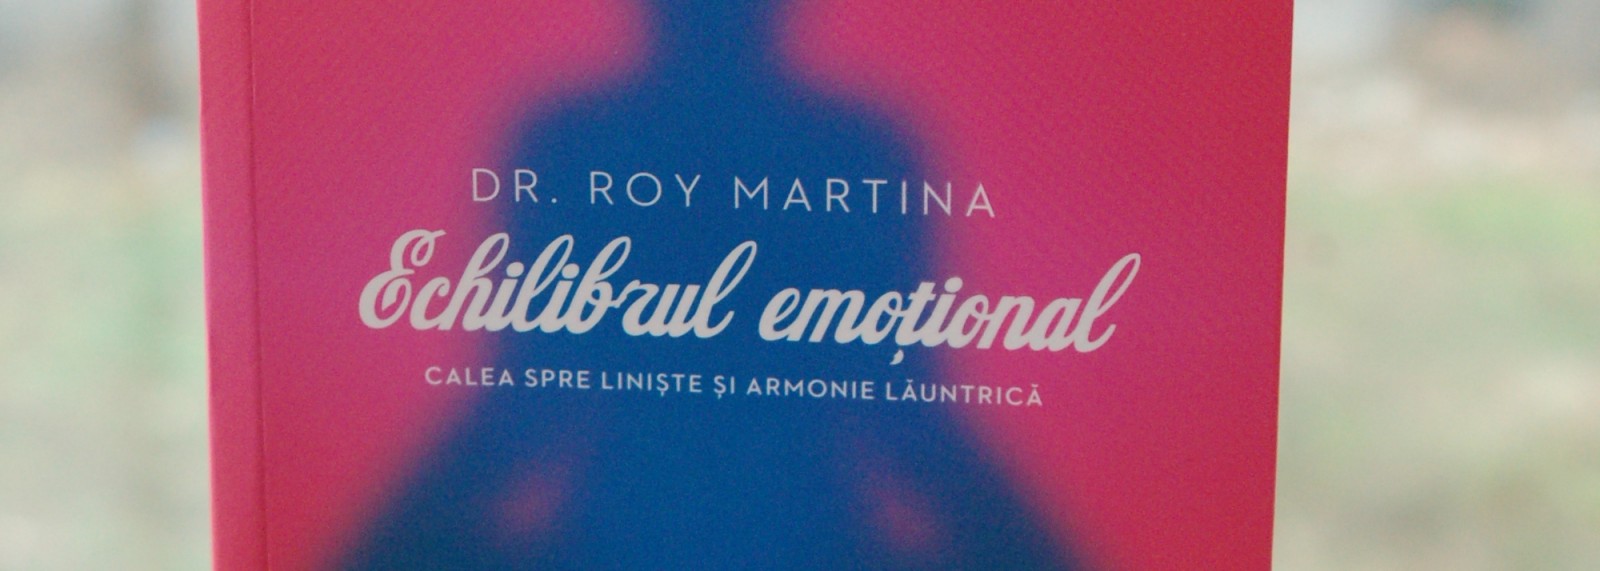 Trei niveluri ale conștiinței și punctul nemișcat – “Echilibrul emoţional” de Dr. Roy Martina